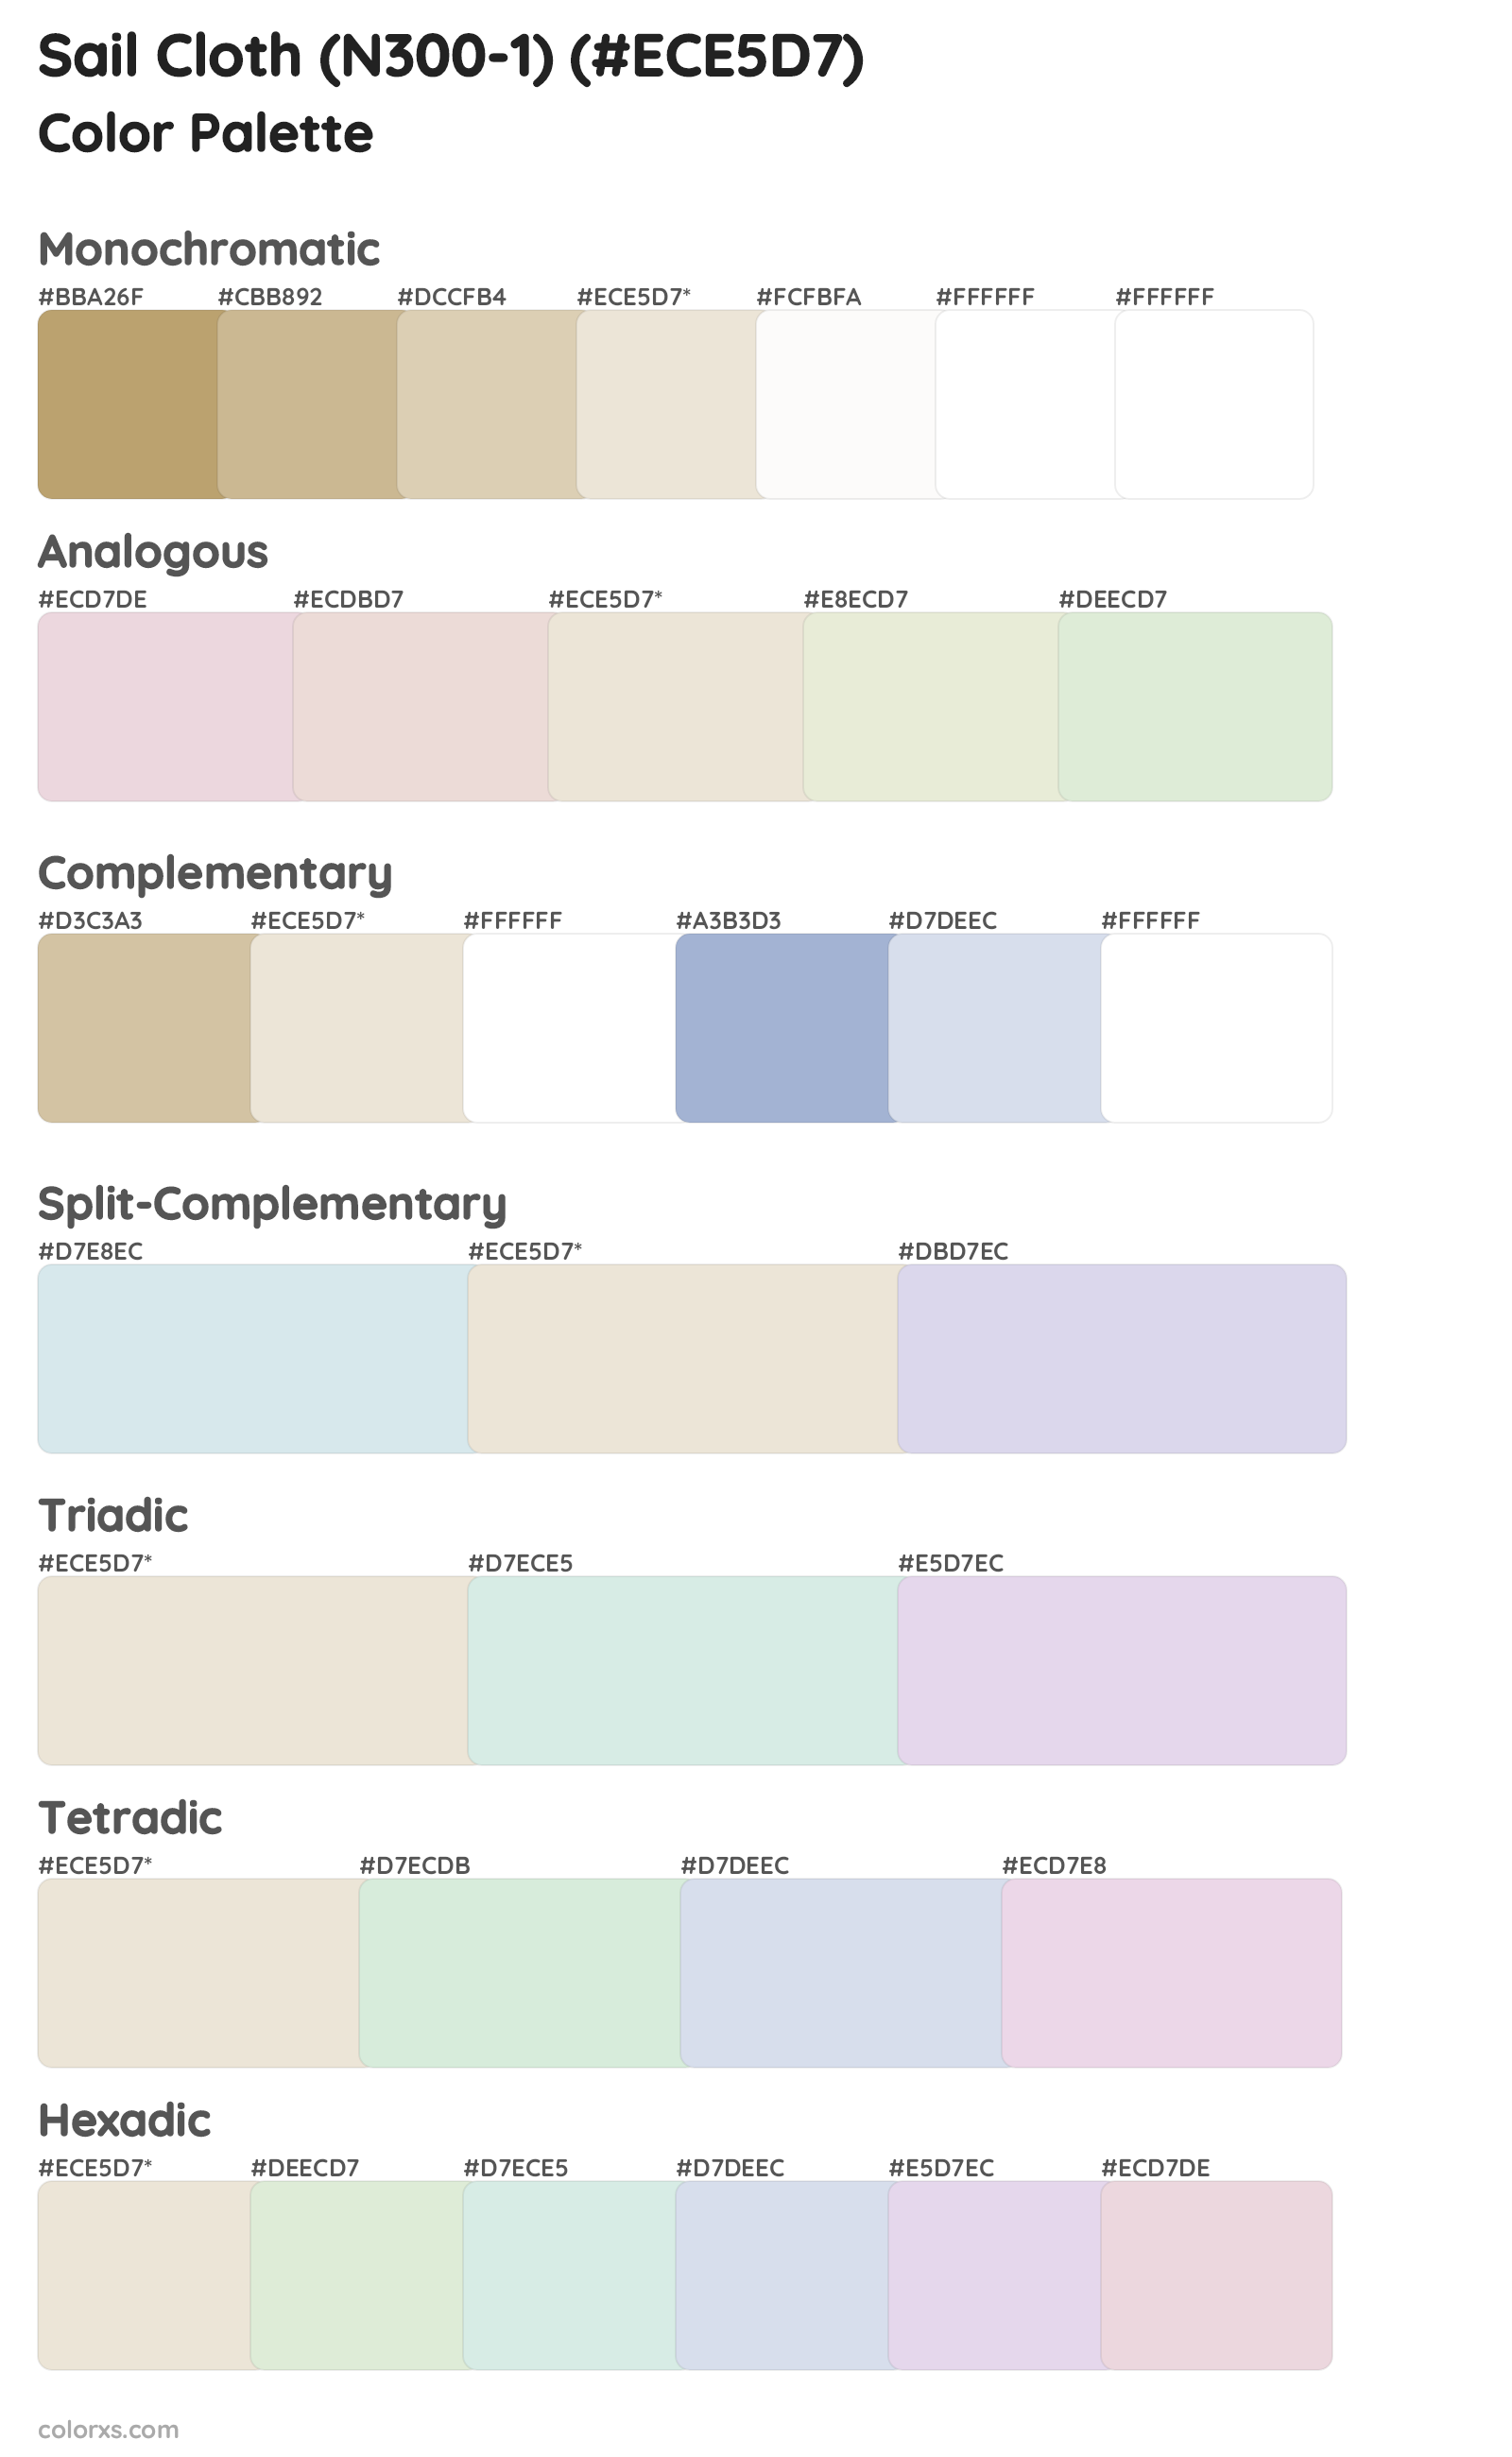 Sail Cloth (N300-1) Color Scheme Palettes